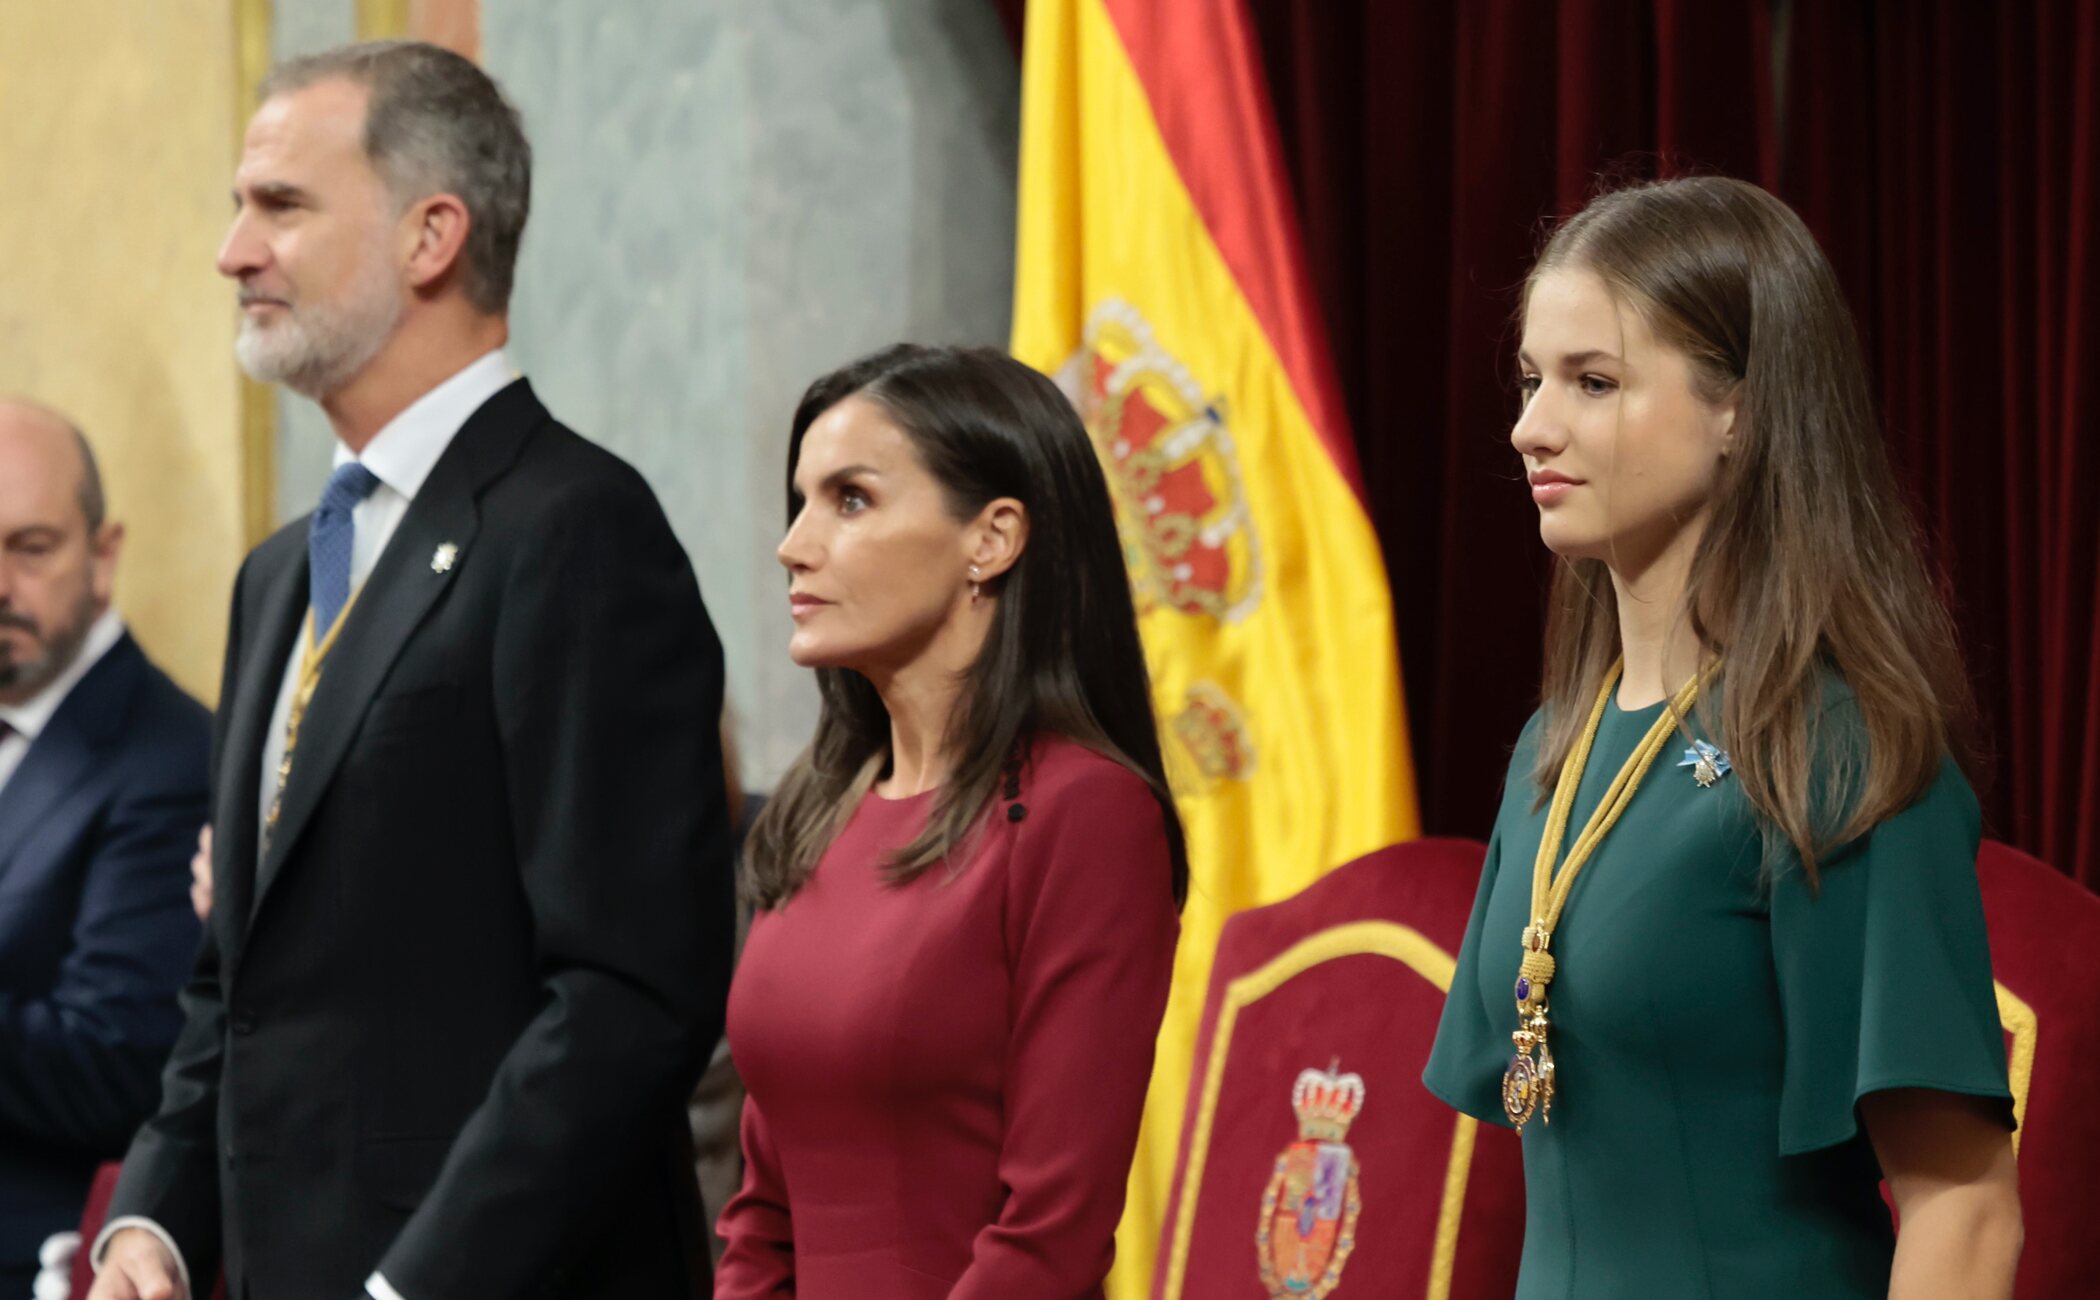 La Princesa Leonor regresa al Palacio de las Cortes un mes después de su Jura para la Apertura de la XV Legislatura